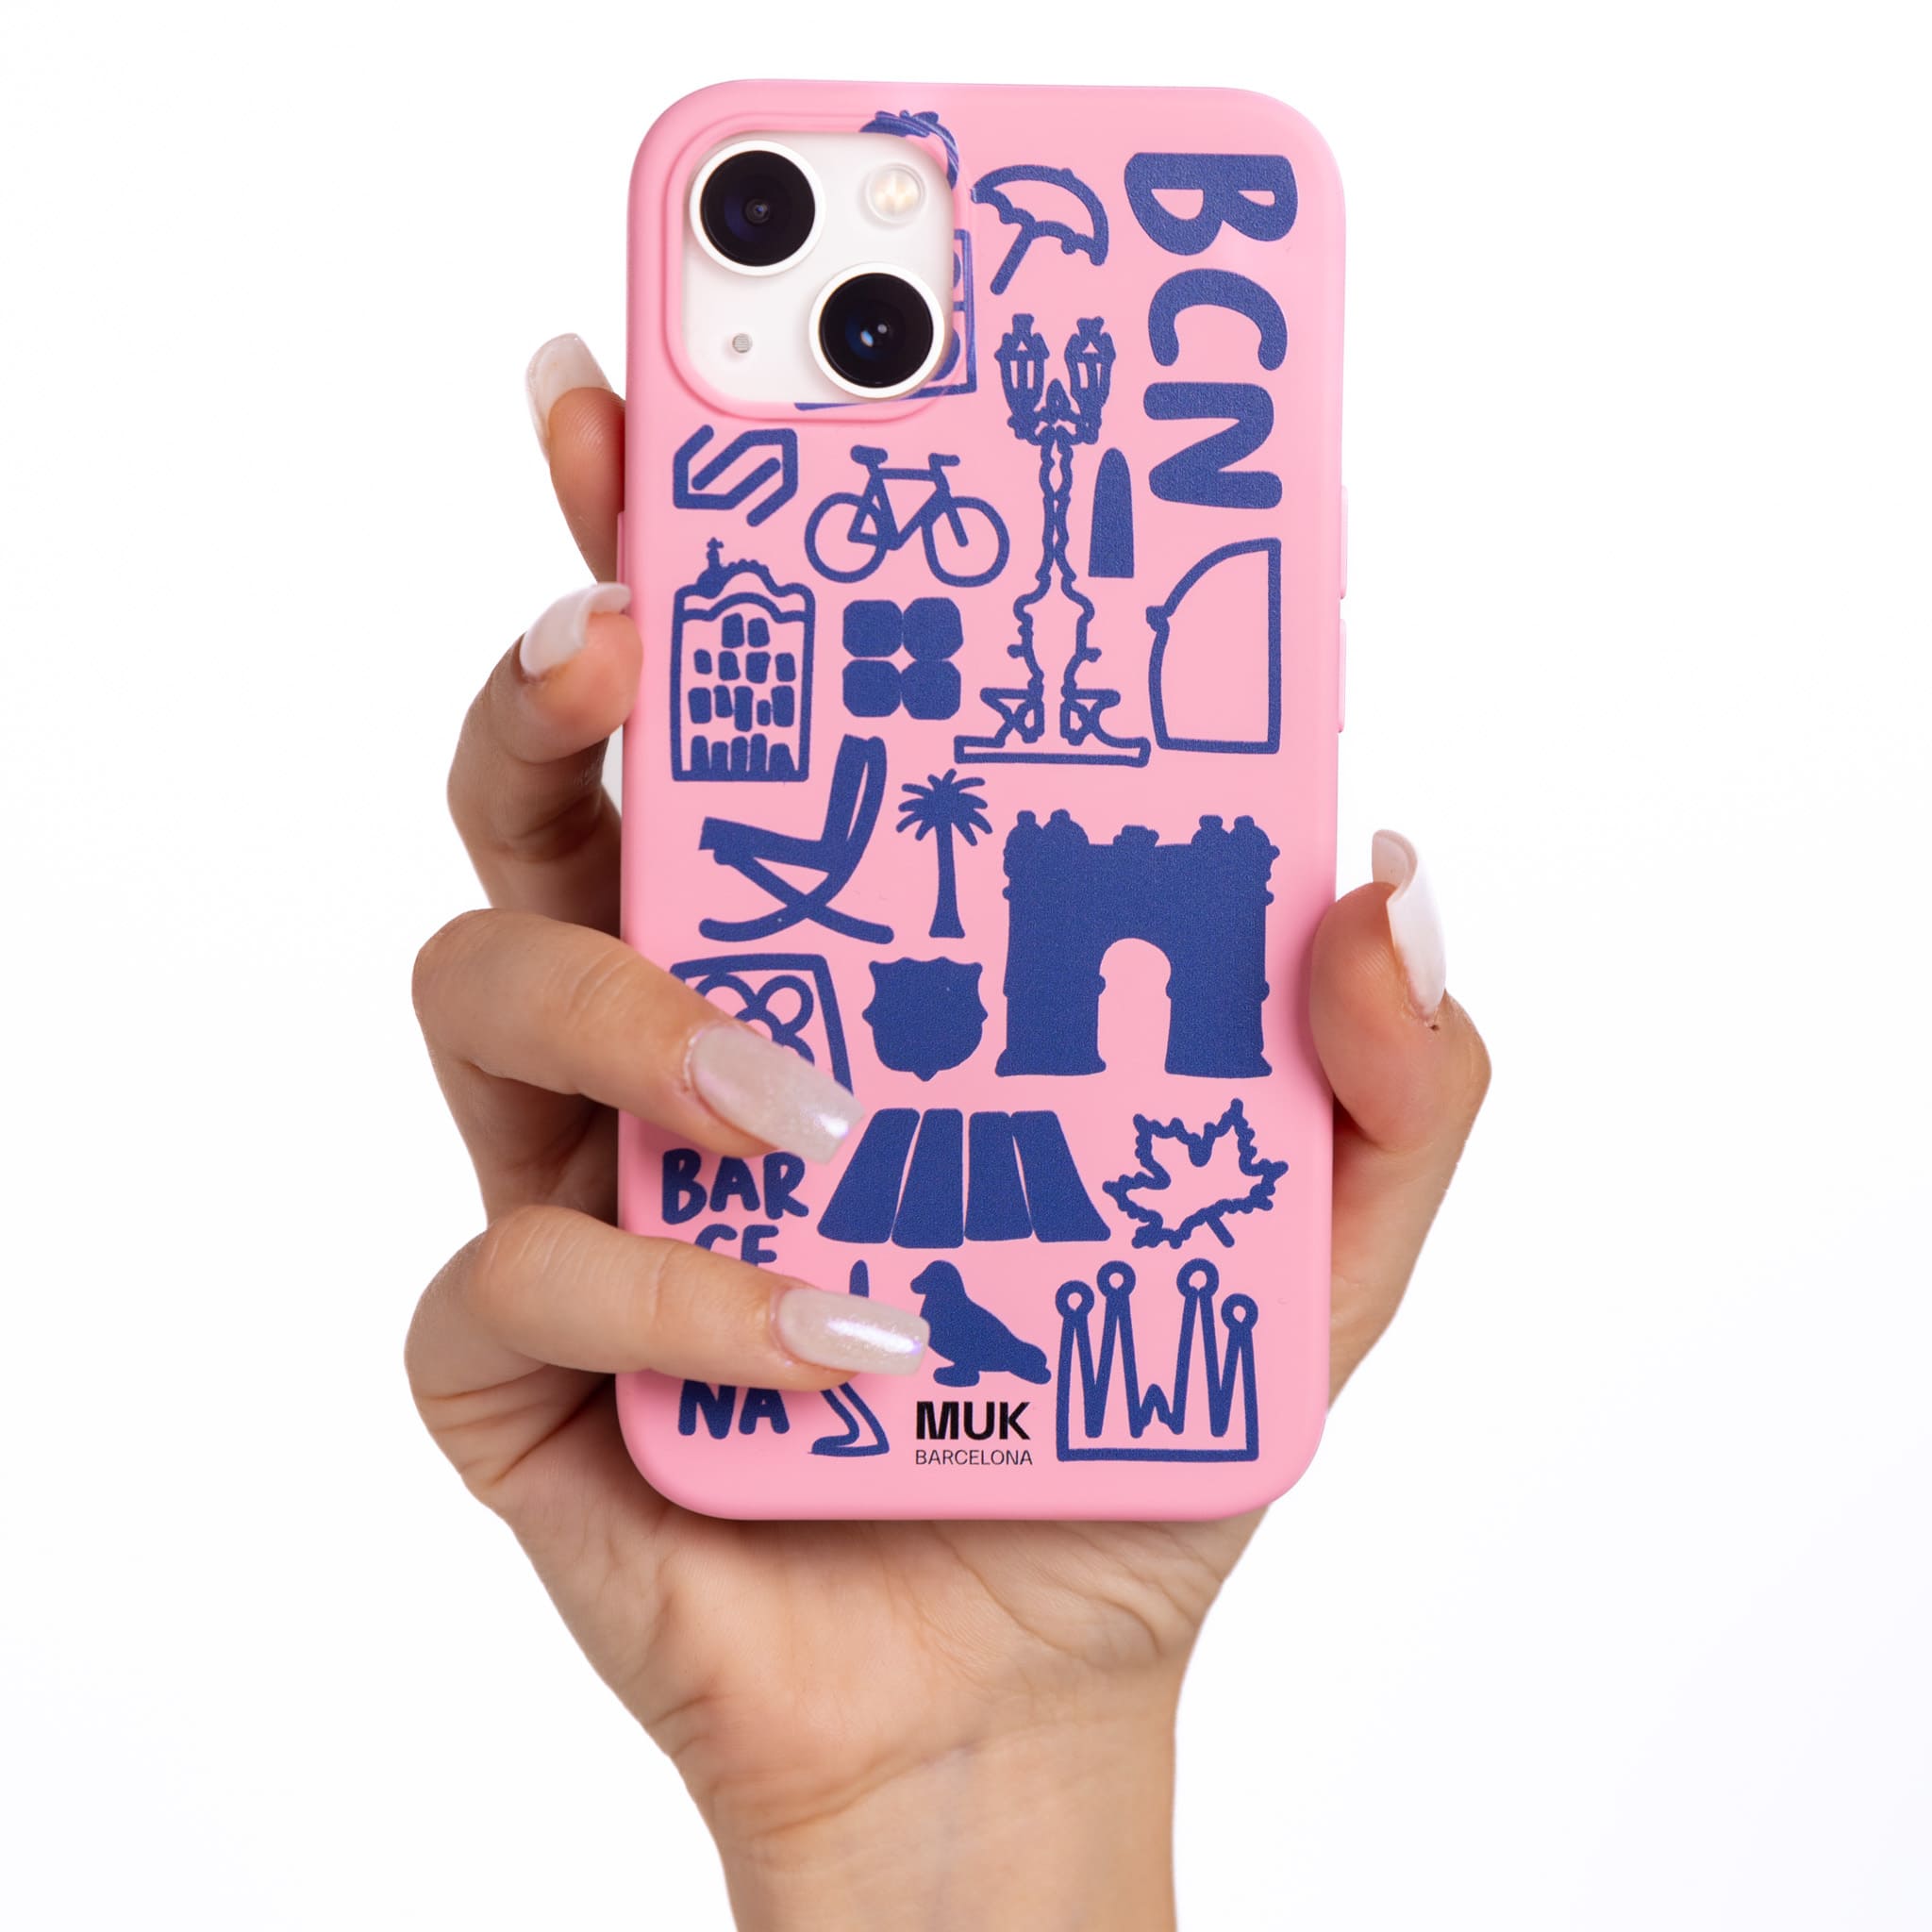 Funda de móvil TPU rosa con mix de dibujos simbólicos de Barcelona.
